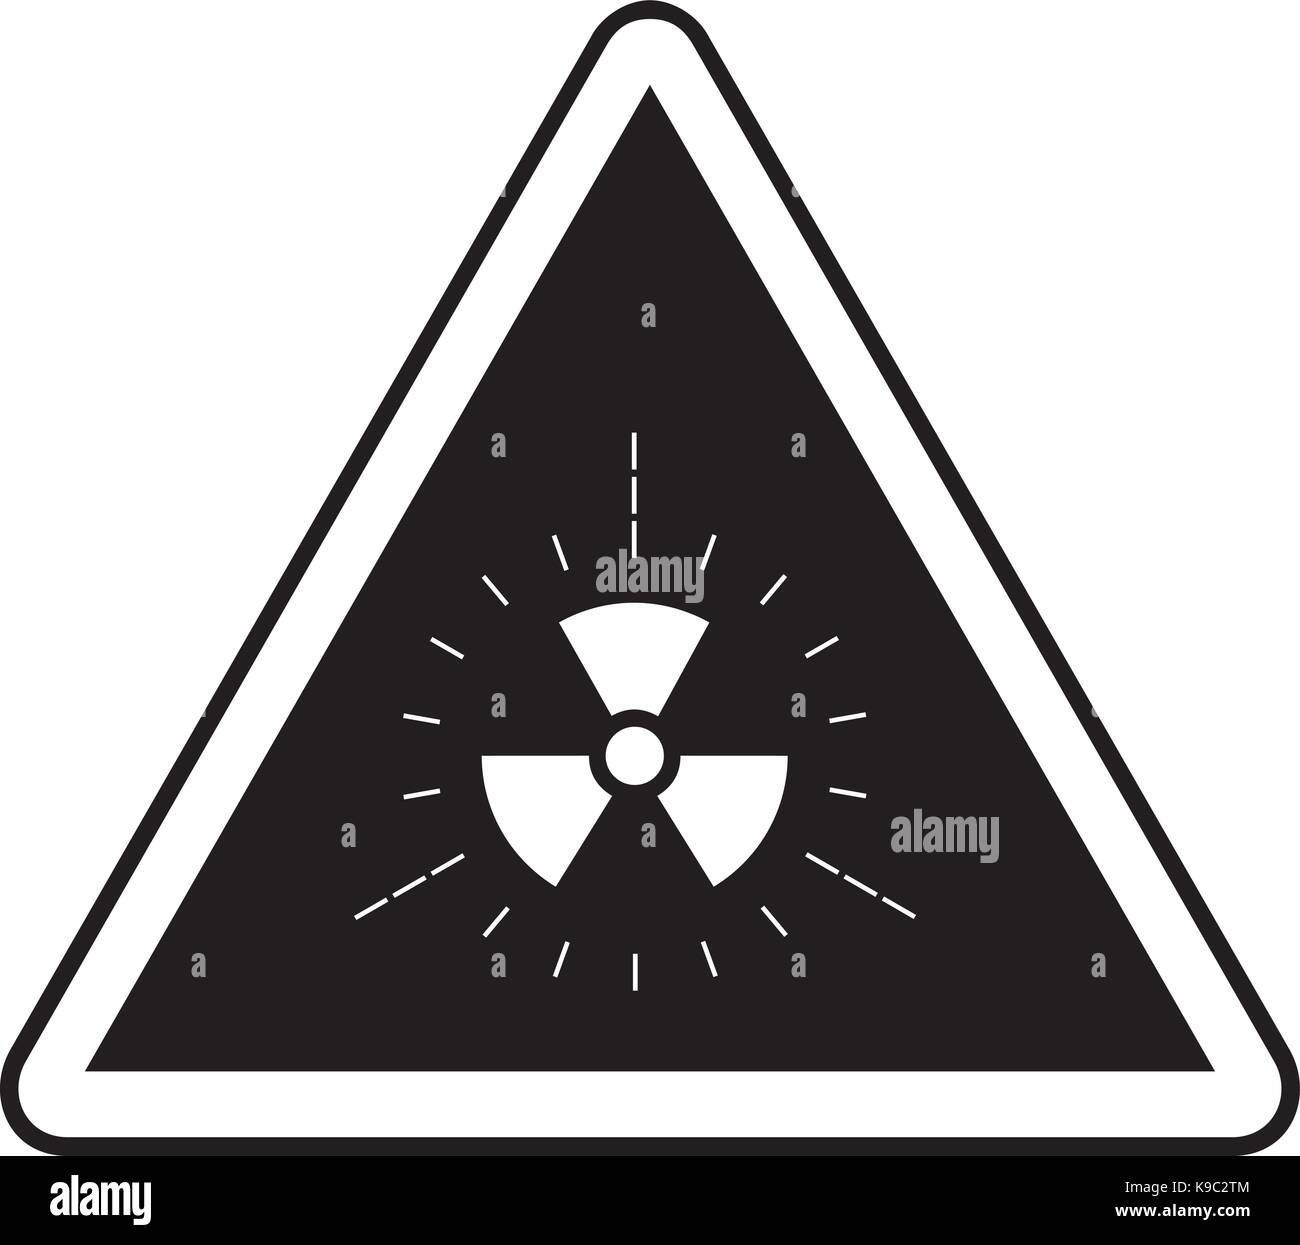 Radiation warning sign Stock Vector